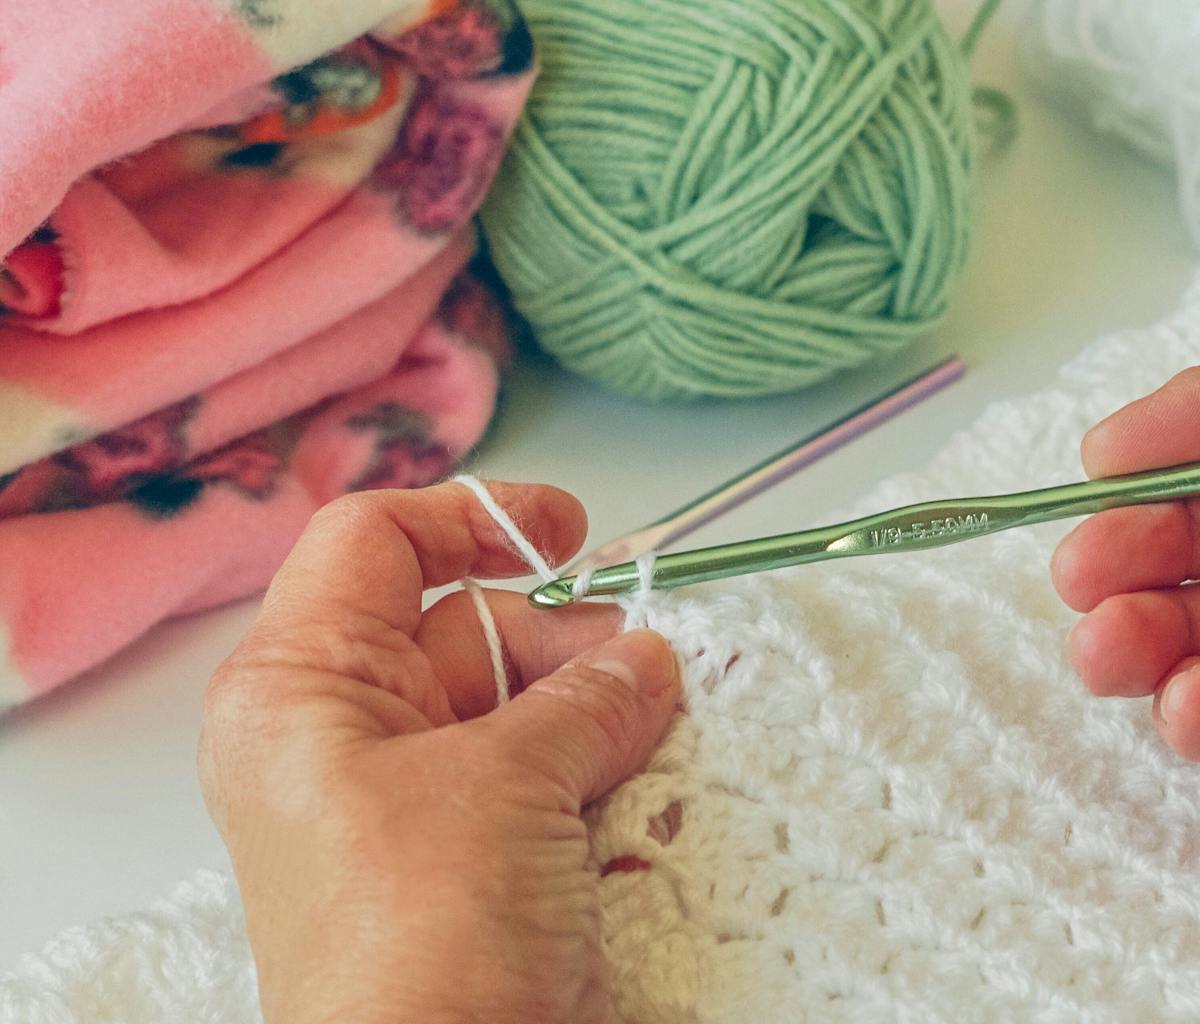 Ergonomic Handle Crochet Hooks Knitting Crocheting Needles Blanket